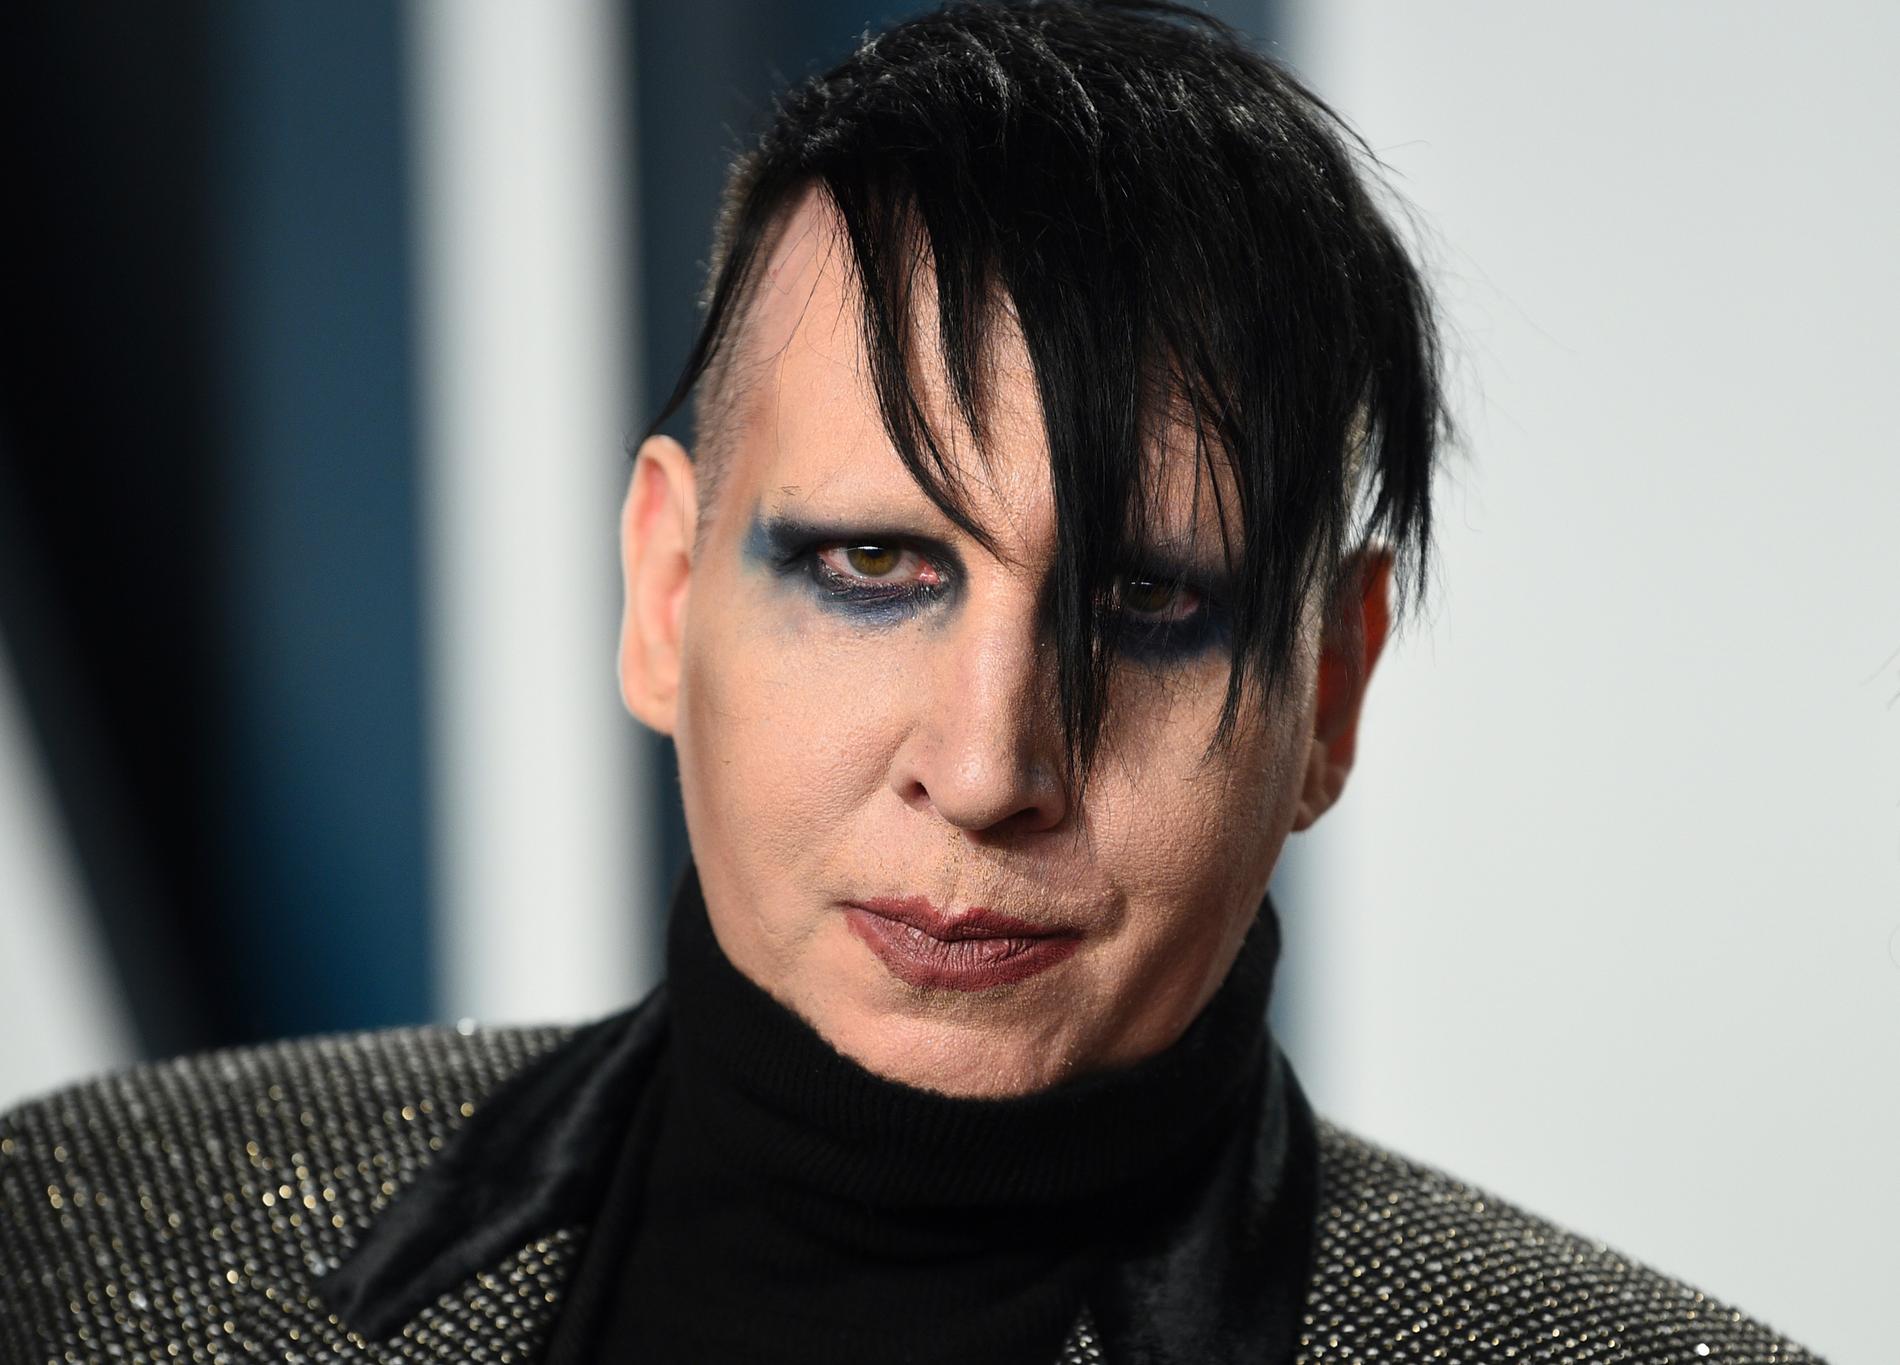 Marilyn Manson anmäler skådespelaren Evan Rachel Wood för förtal efter anklagelser om övergrepp och grooming. Arkivbild.